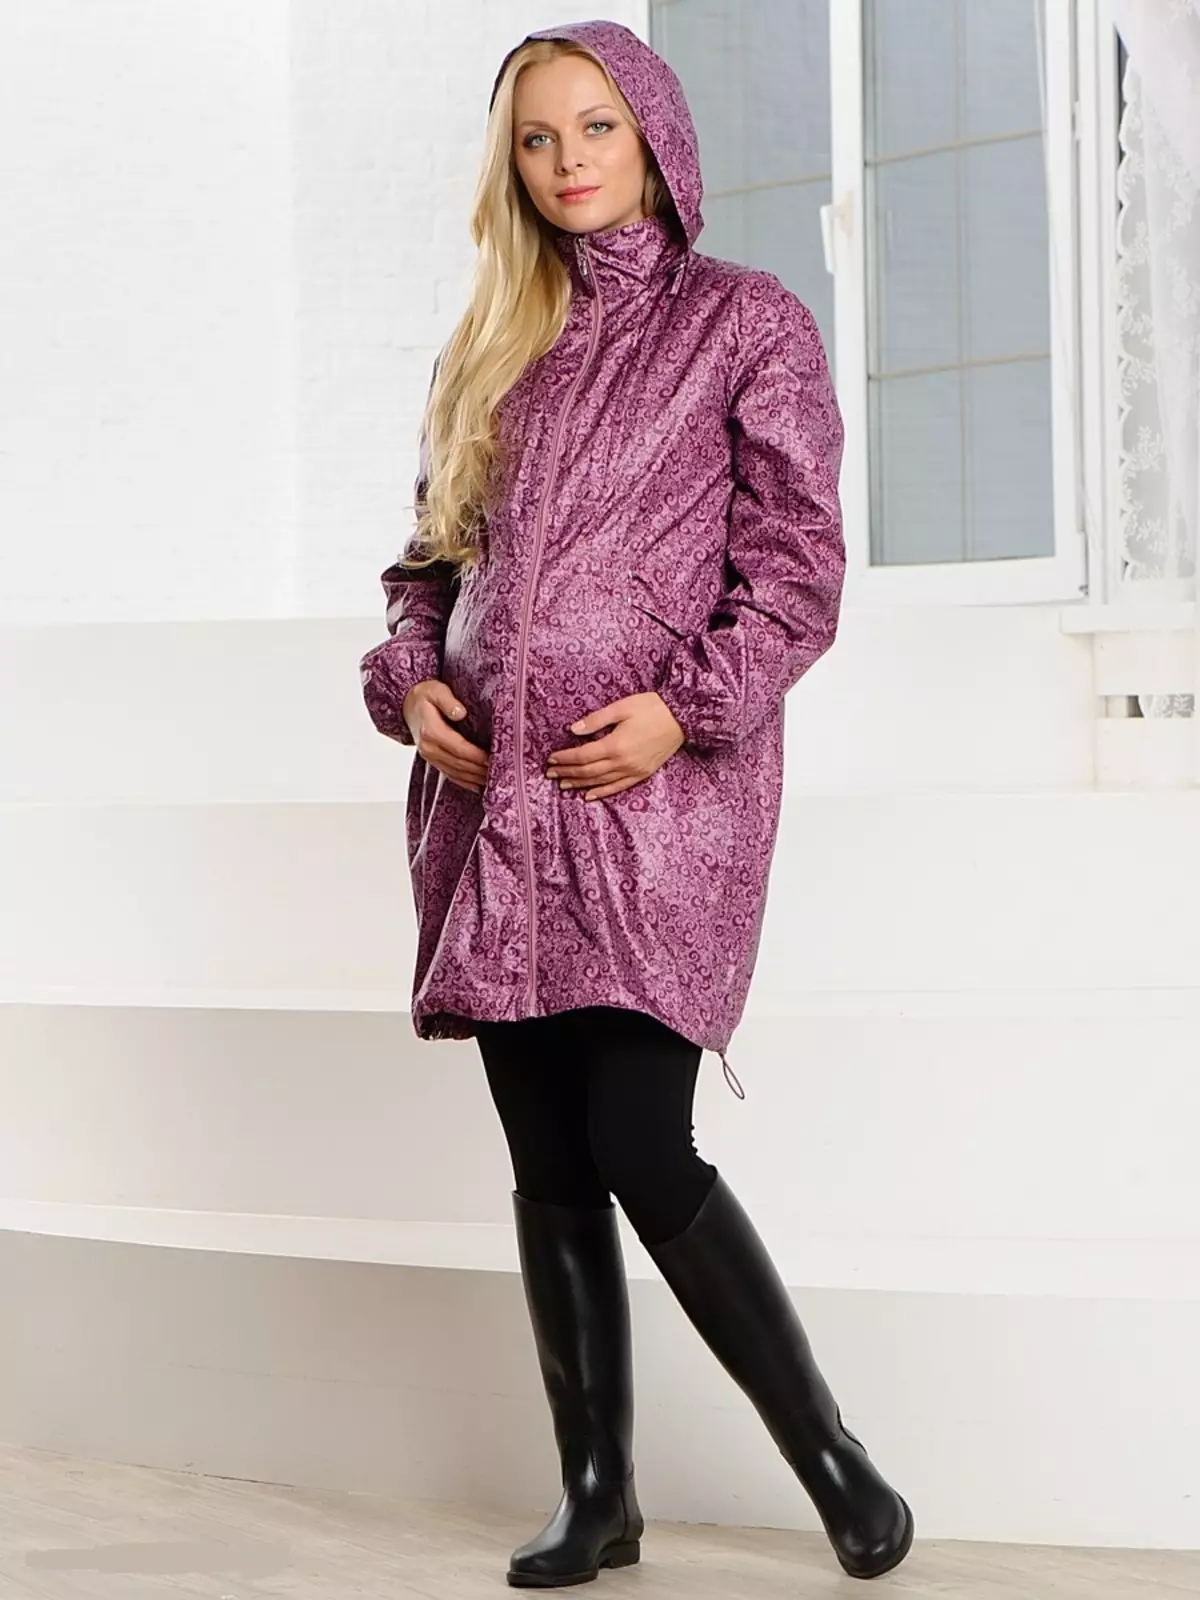 Mantel për gratë shtatzëna (40 foto): pallto dhe mantel dhe xhaketë mantel nga Adela, HM, modres dhe mama e ëmbël 359_38